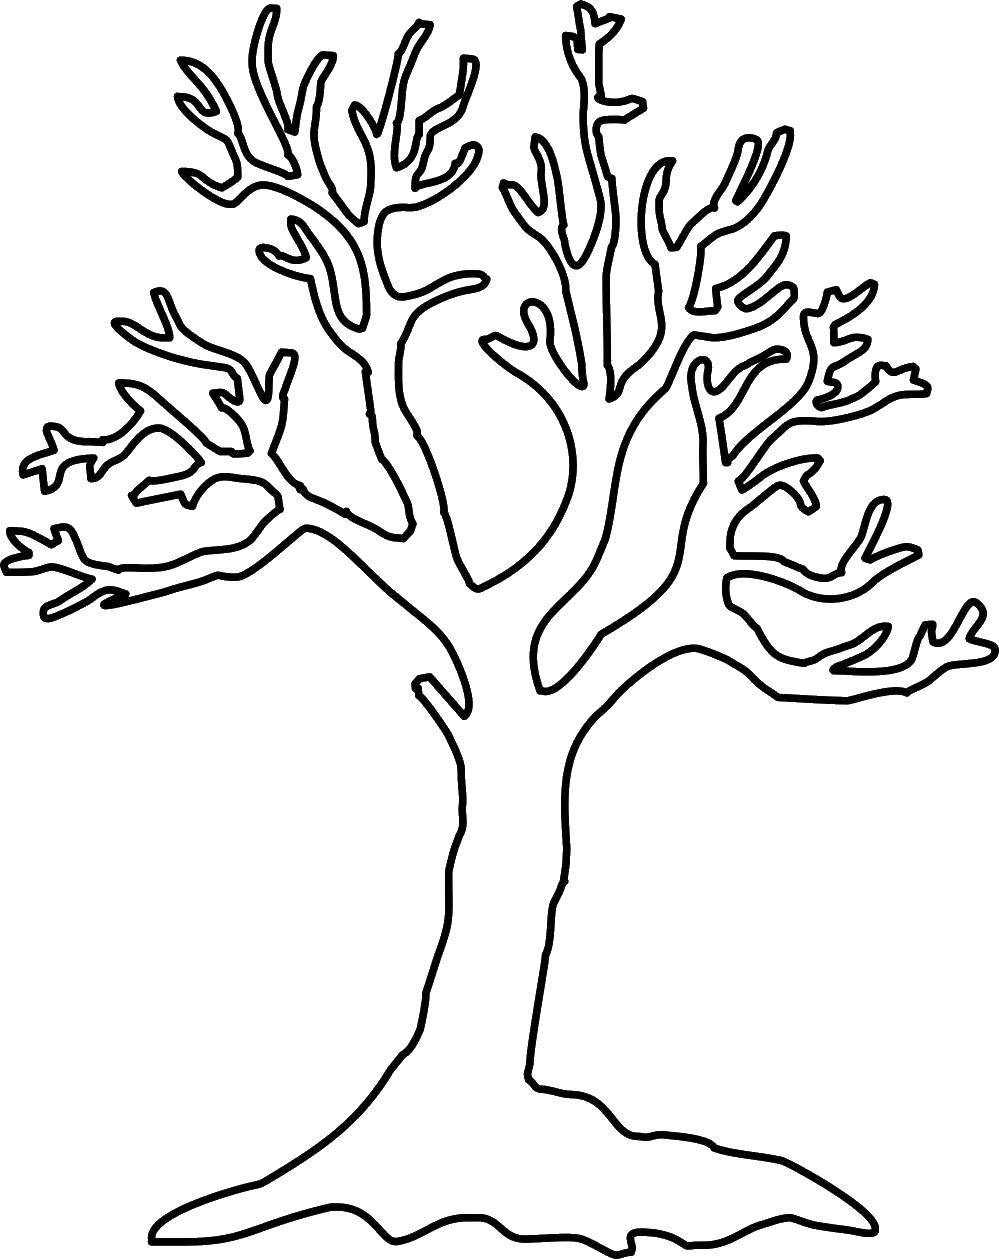 Раскраска дерева для детей (деревья)